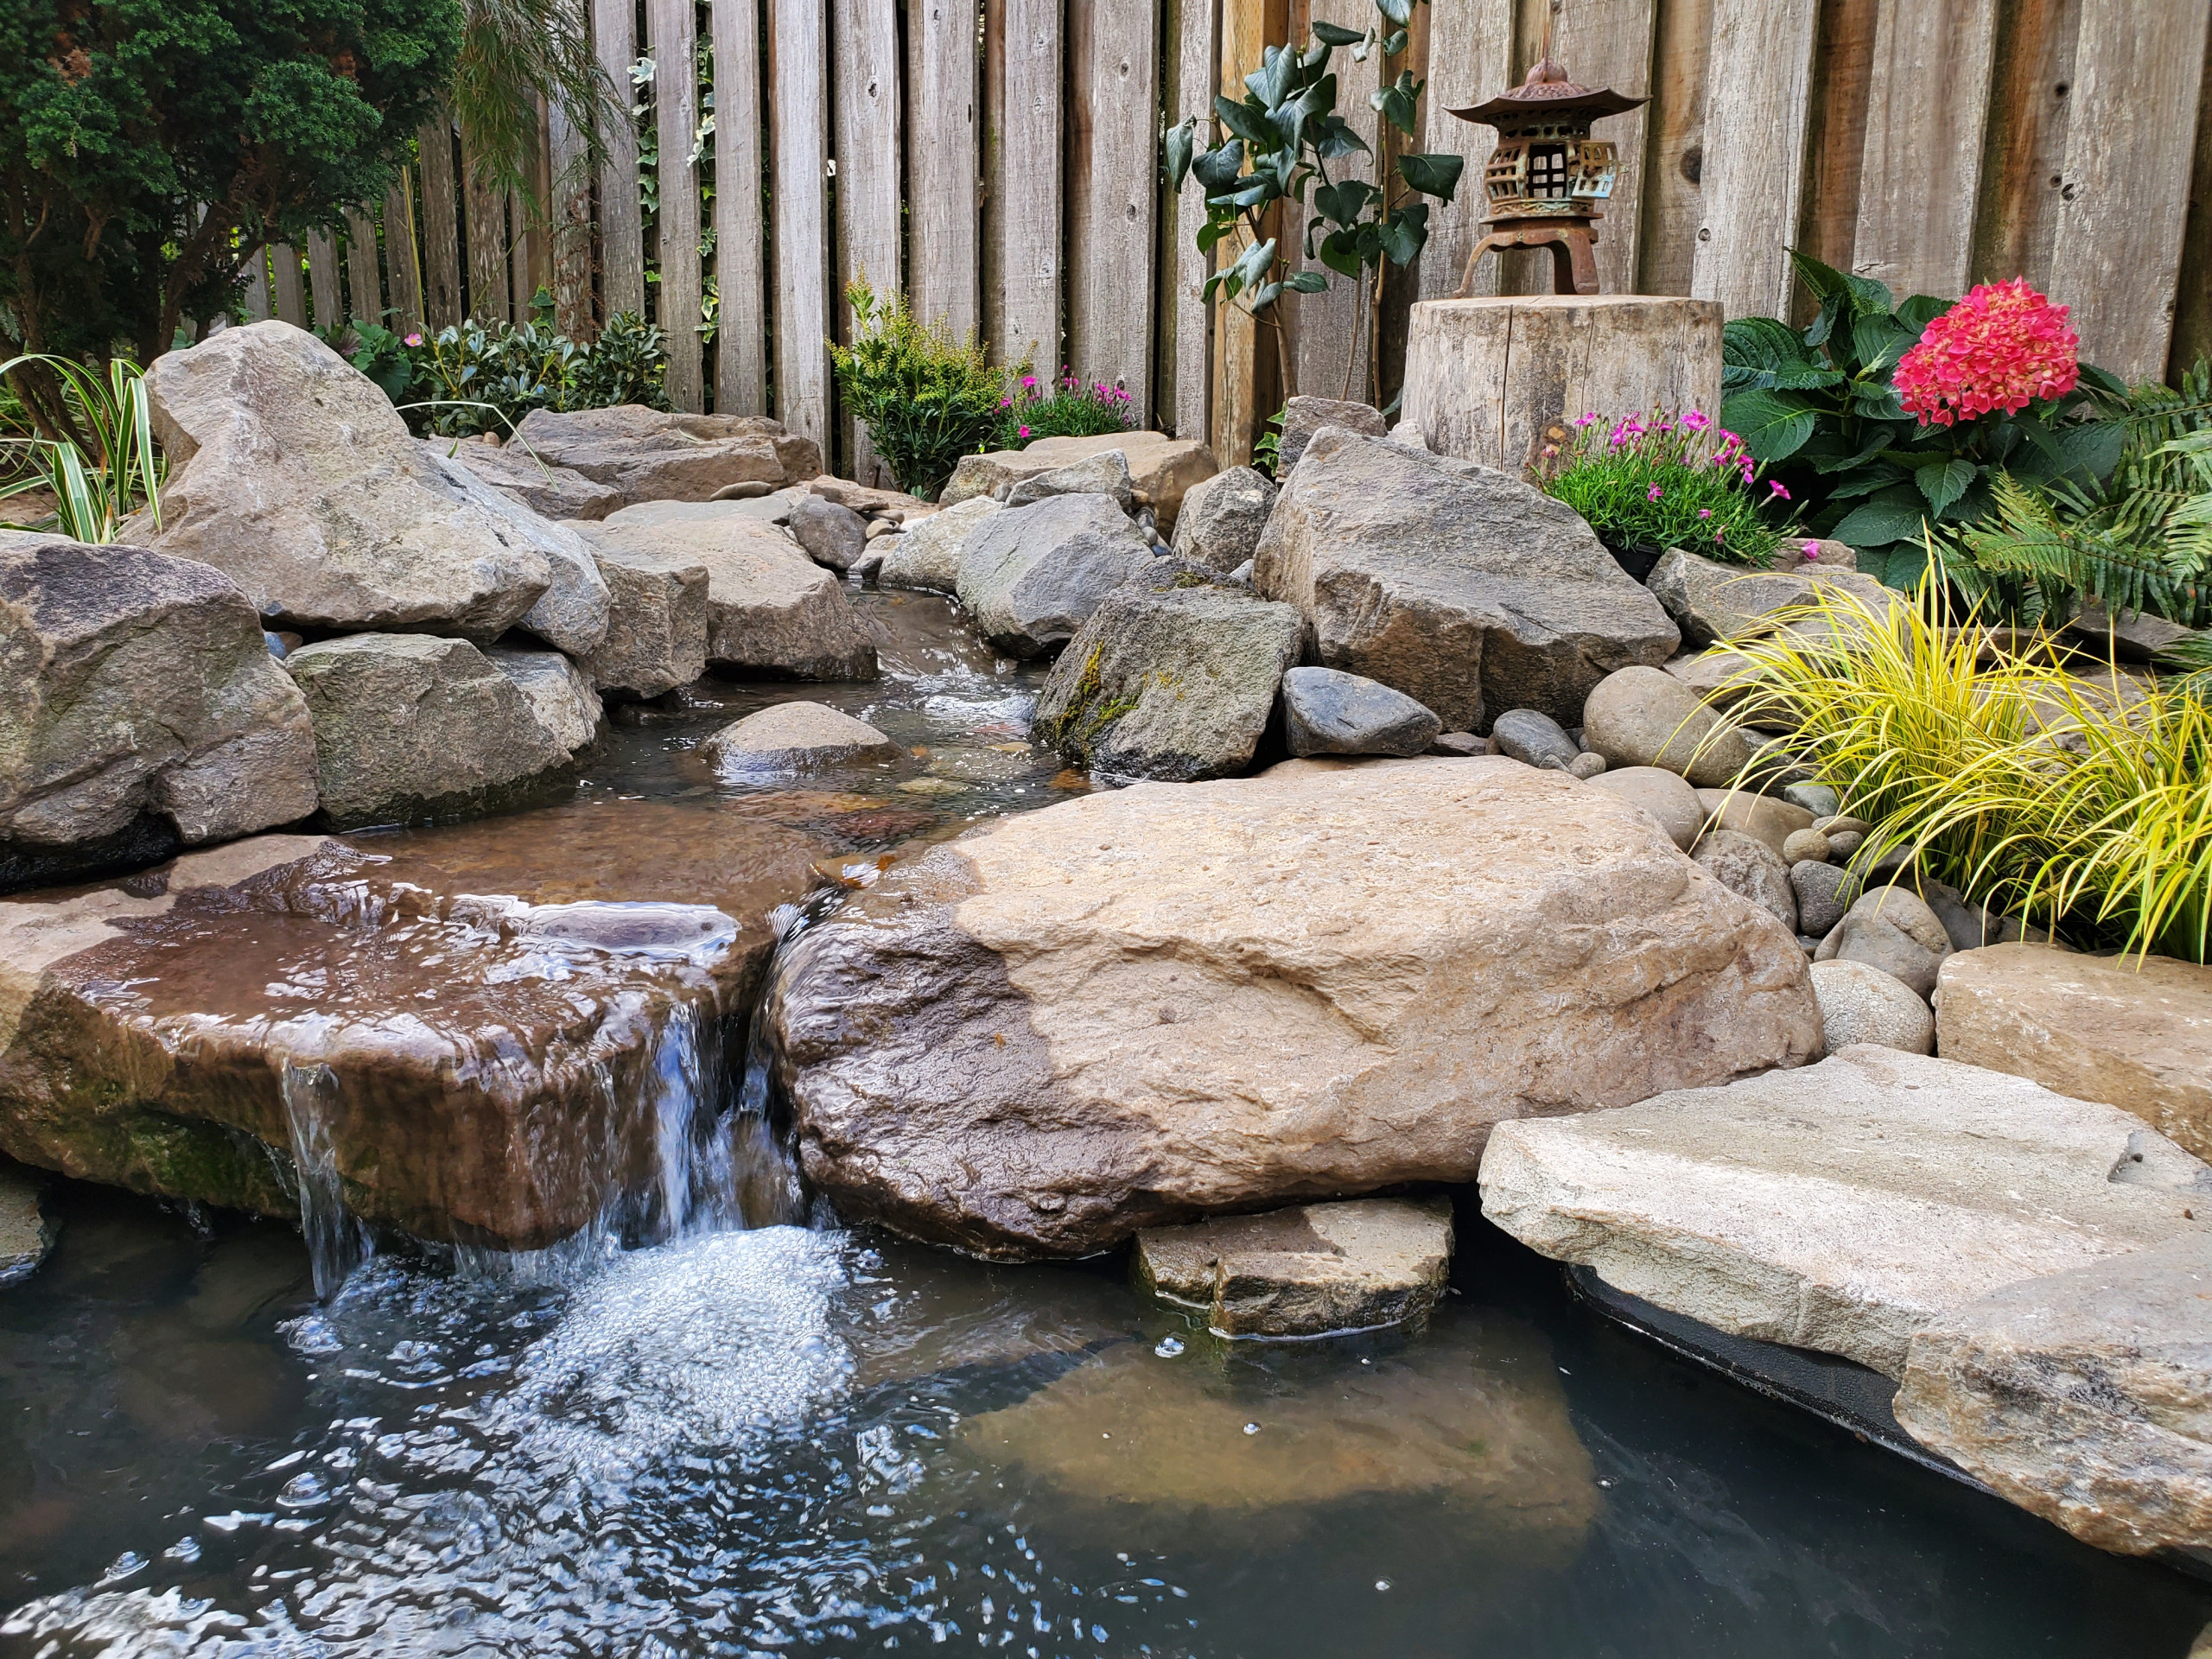 Japanese Garden Water Feature - Photos & Ideas | Houzz